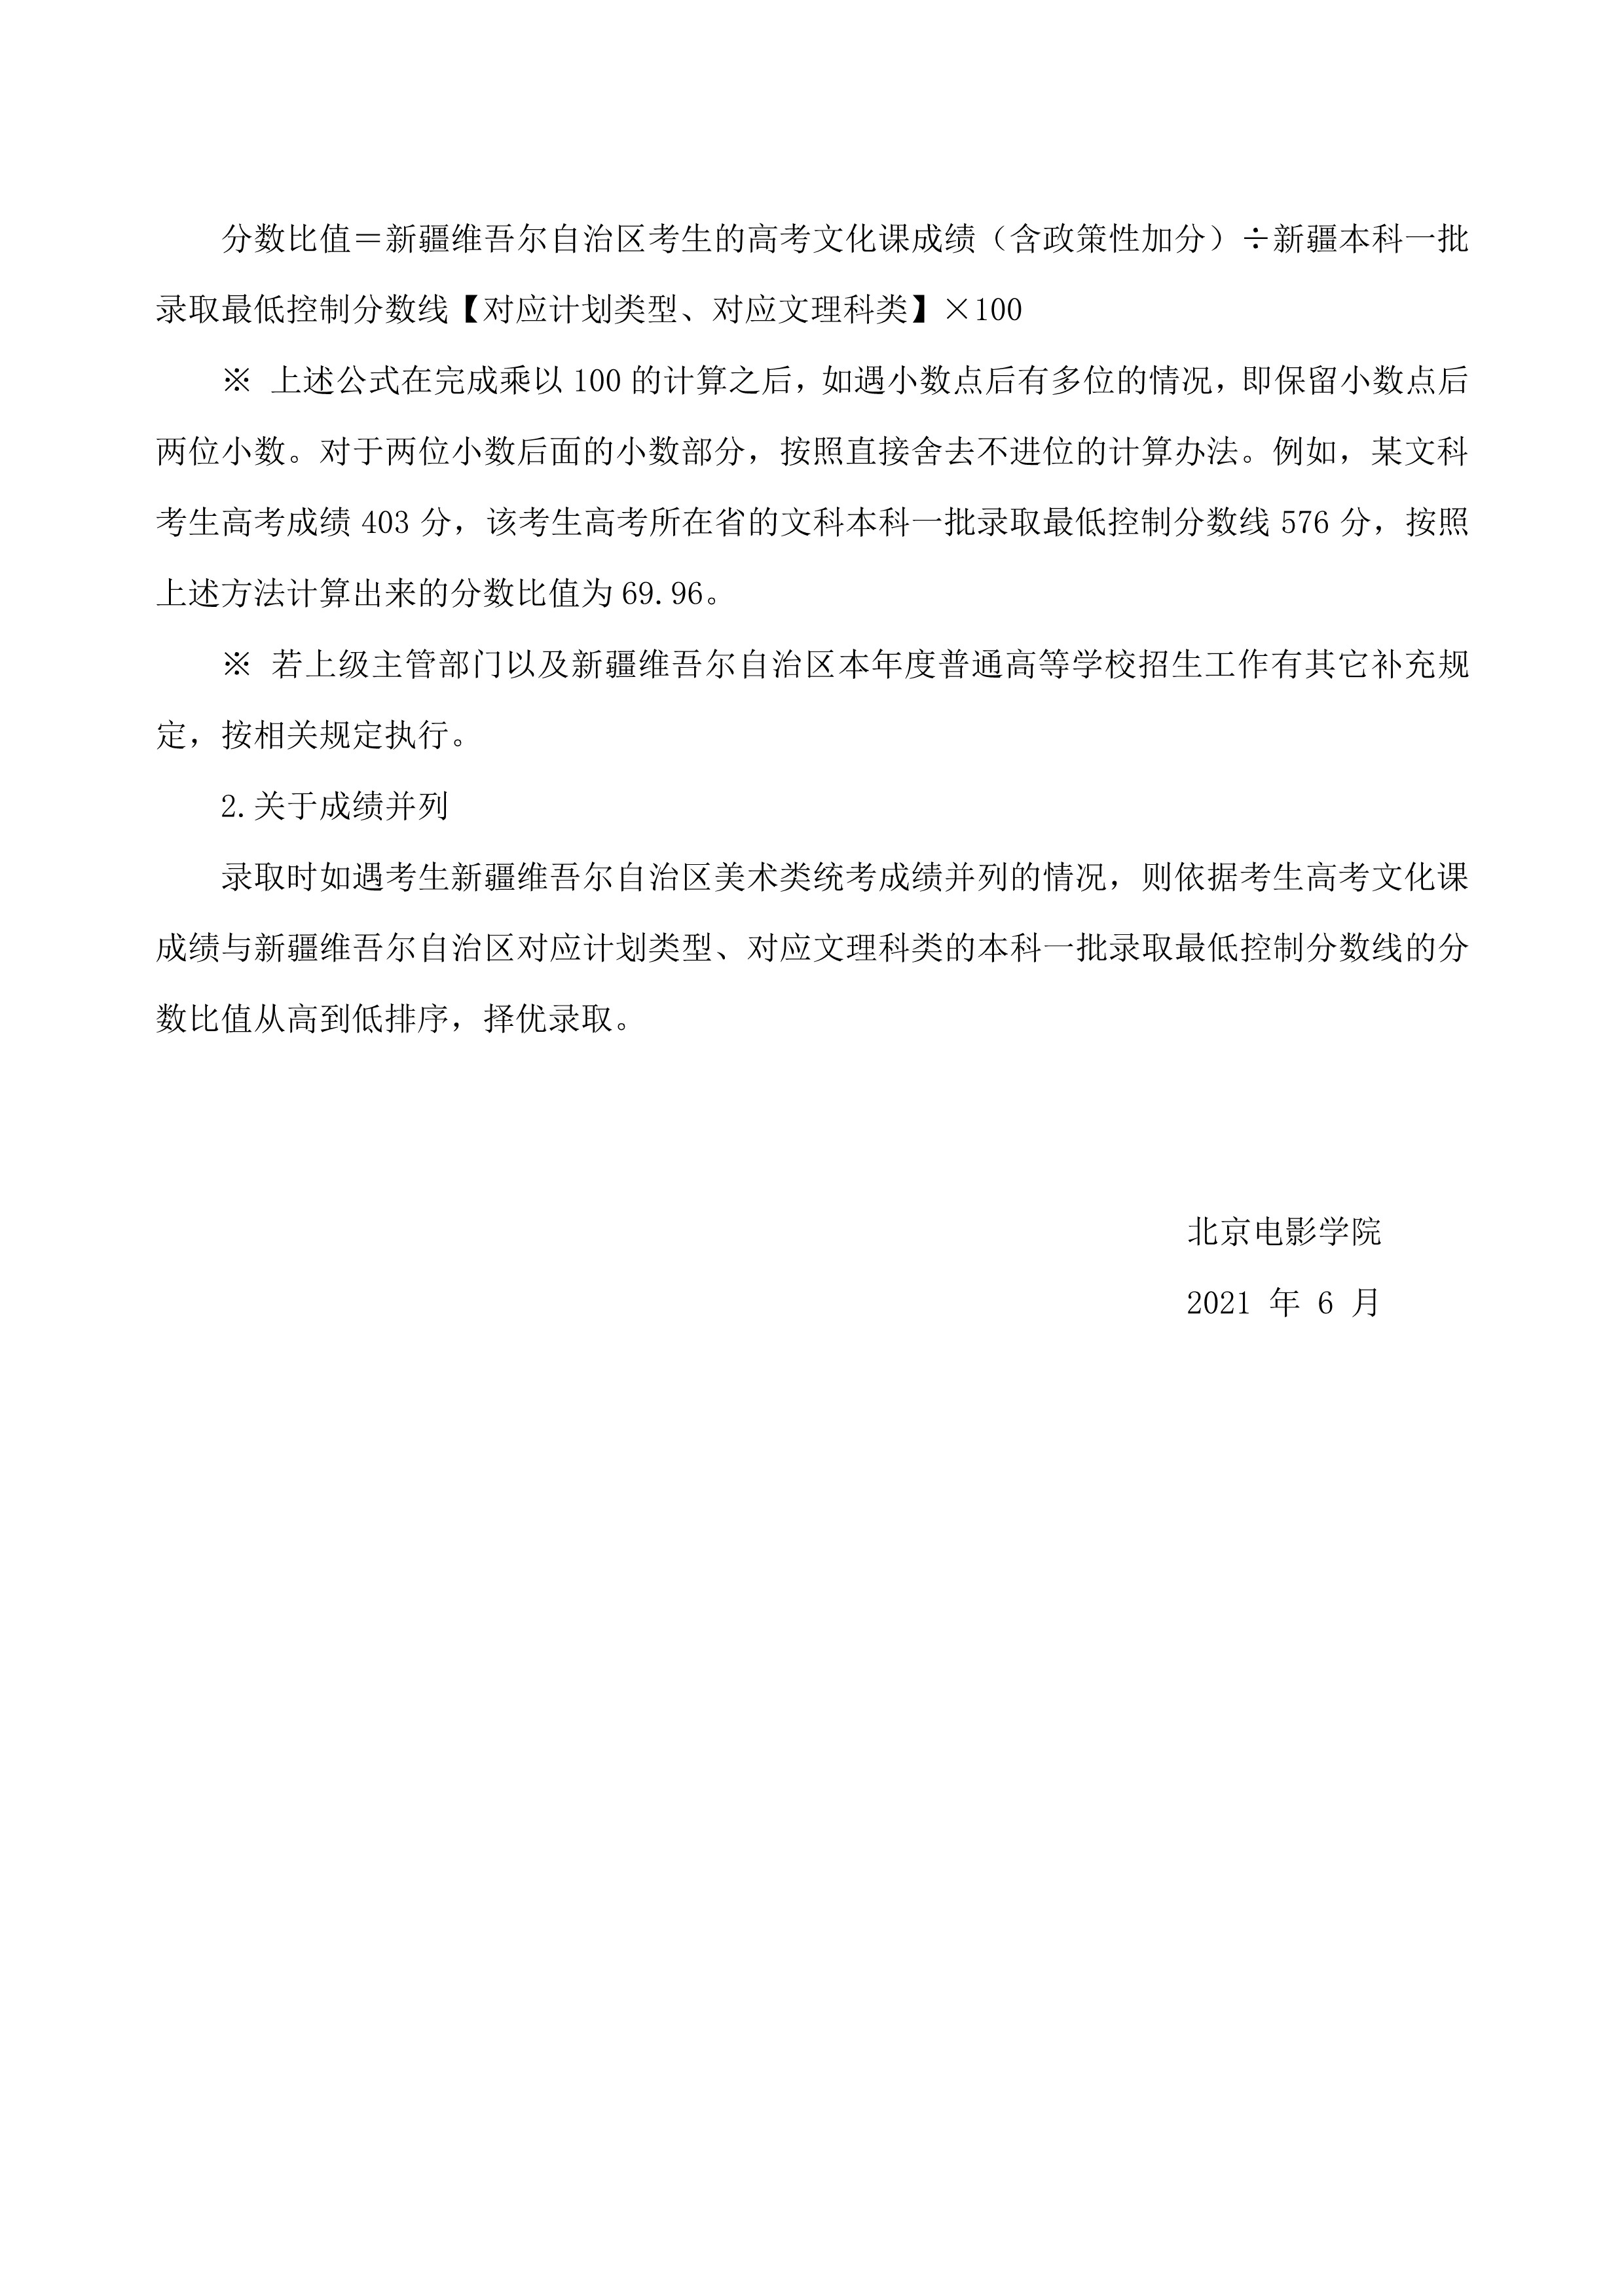 北京电影学院关于2021年新疆协作计划招生相关安排的通知_2.jpg